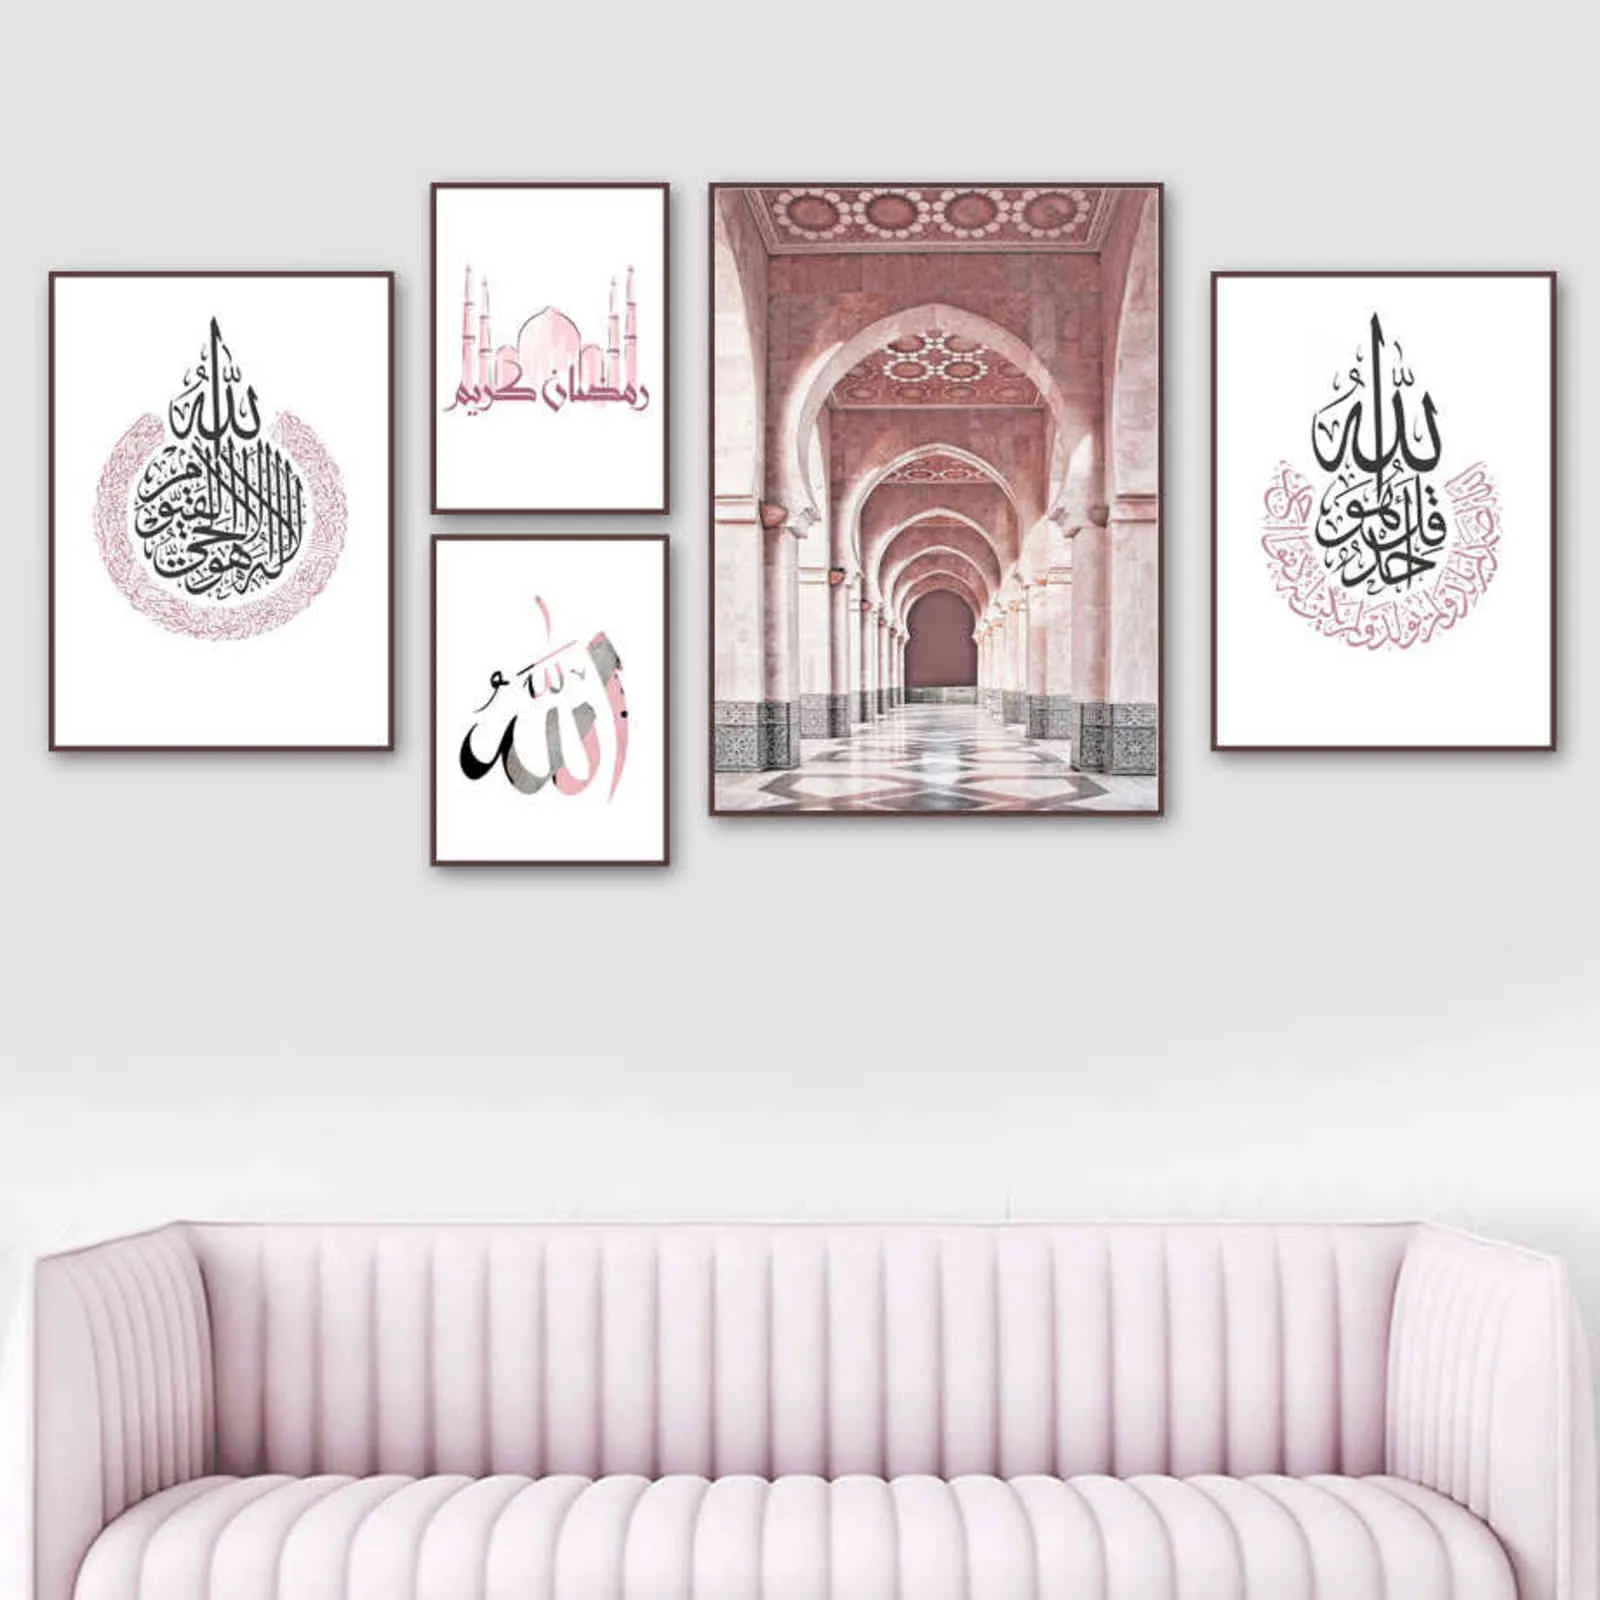 Marockansk moské arabisk kalligrafi islamisk affisch väggkonsttryck kanfas målning nordiska väggbilder för vardagsrum dekoration h1110